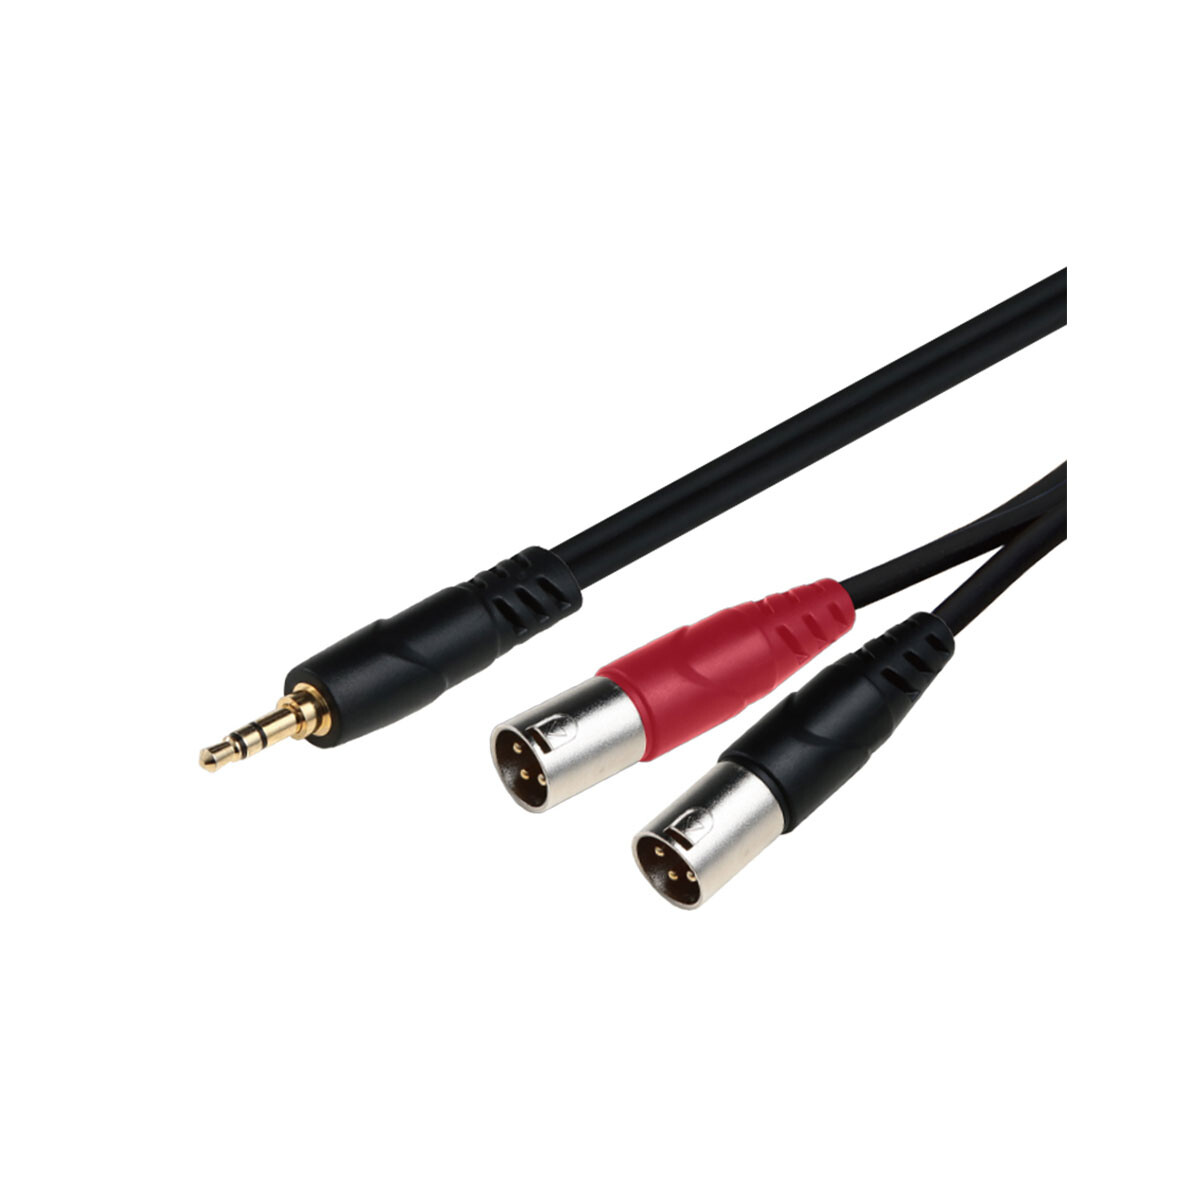 Cable Adaptador Soundking Bjj235 3m 1x3.5st+2xxlr M 